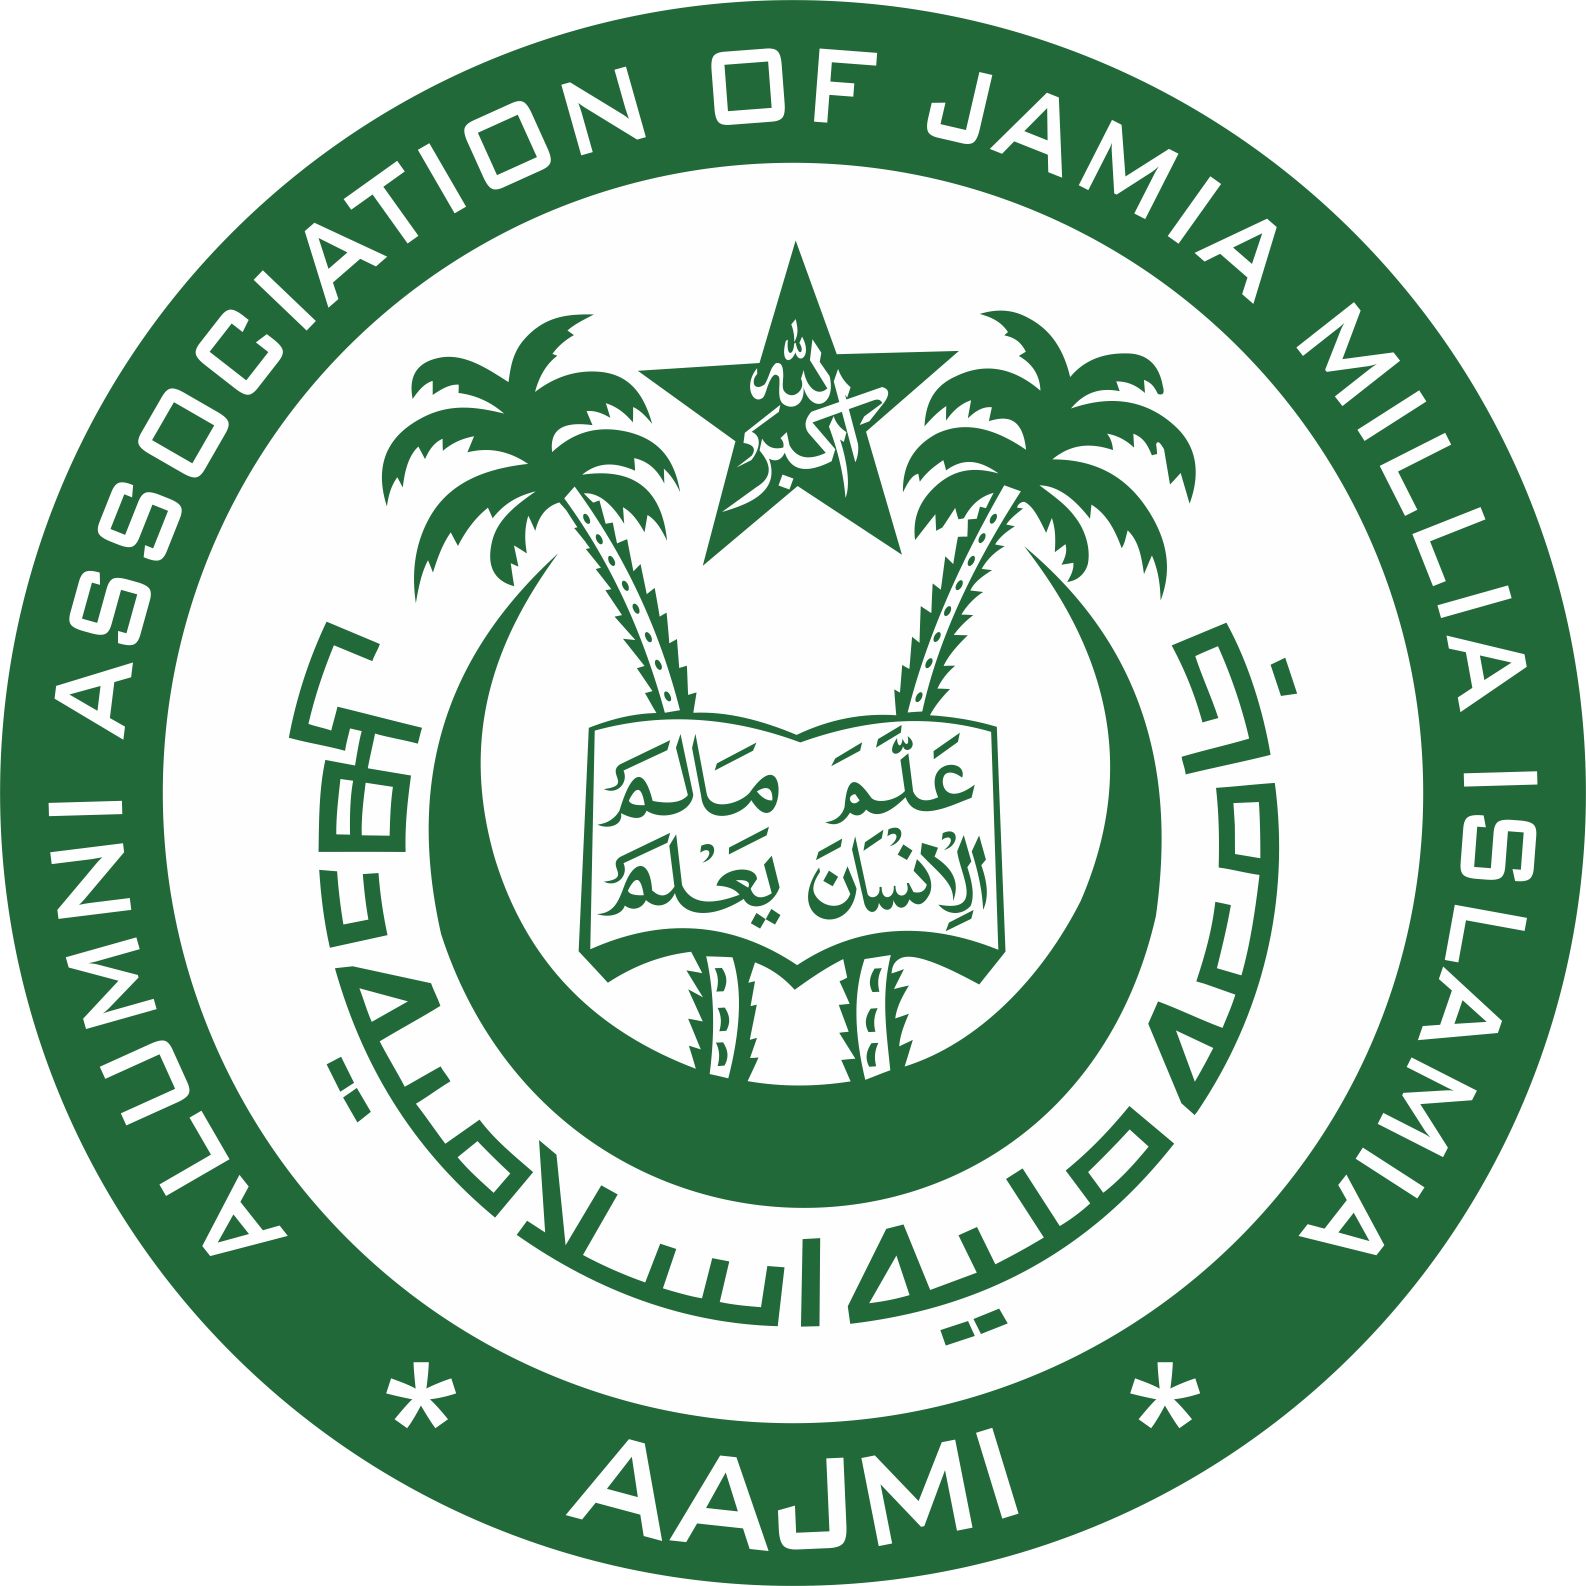 Jamia Millia Islamia Recruitment 2023